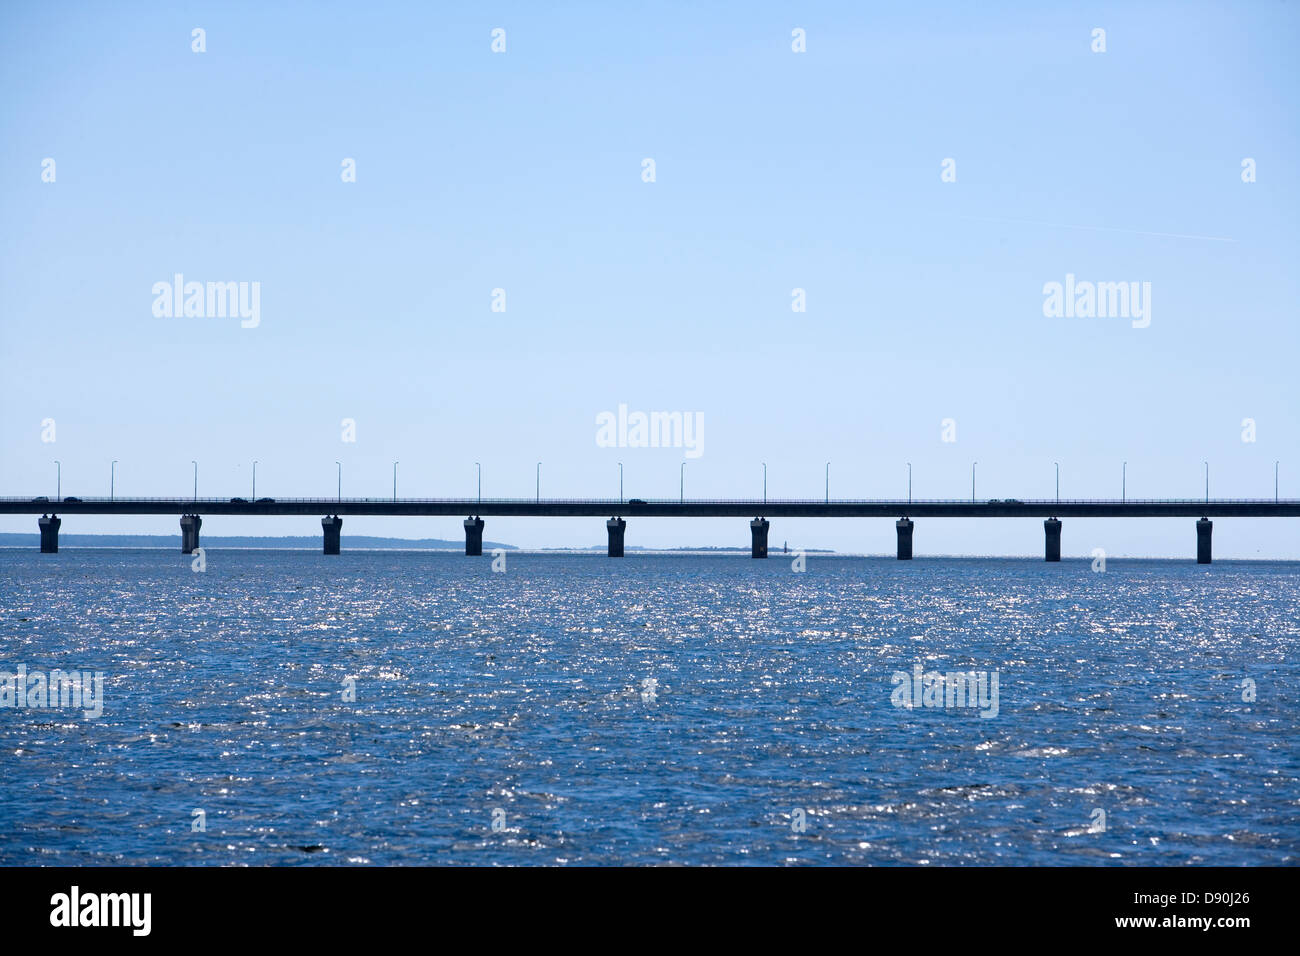 Olandsbron, die Brücke zwischen Kalmar und Öland, Schweden. Stockfoto